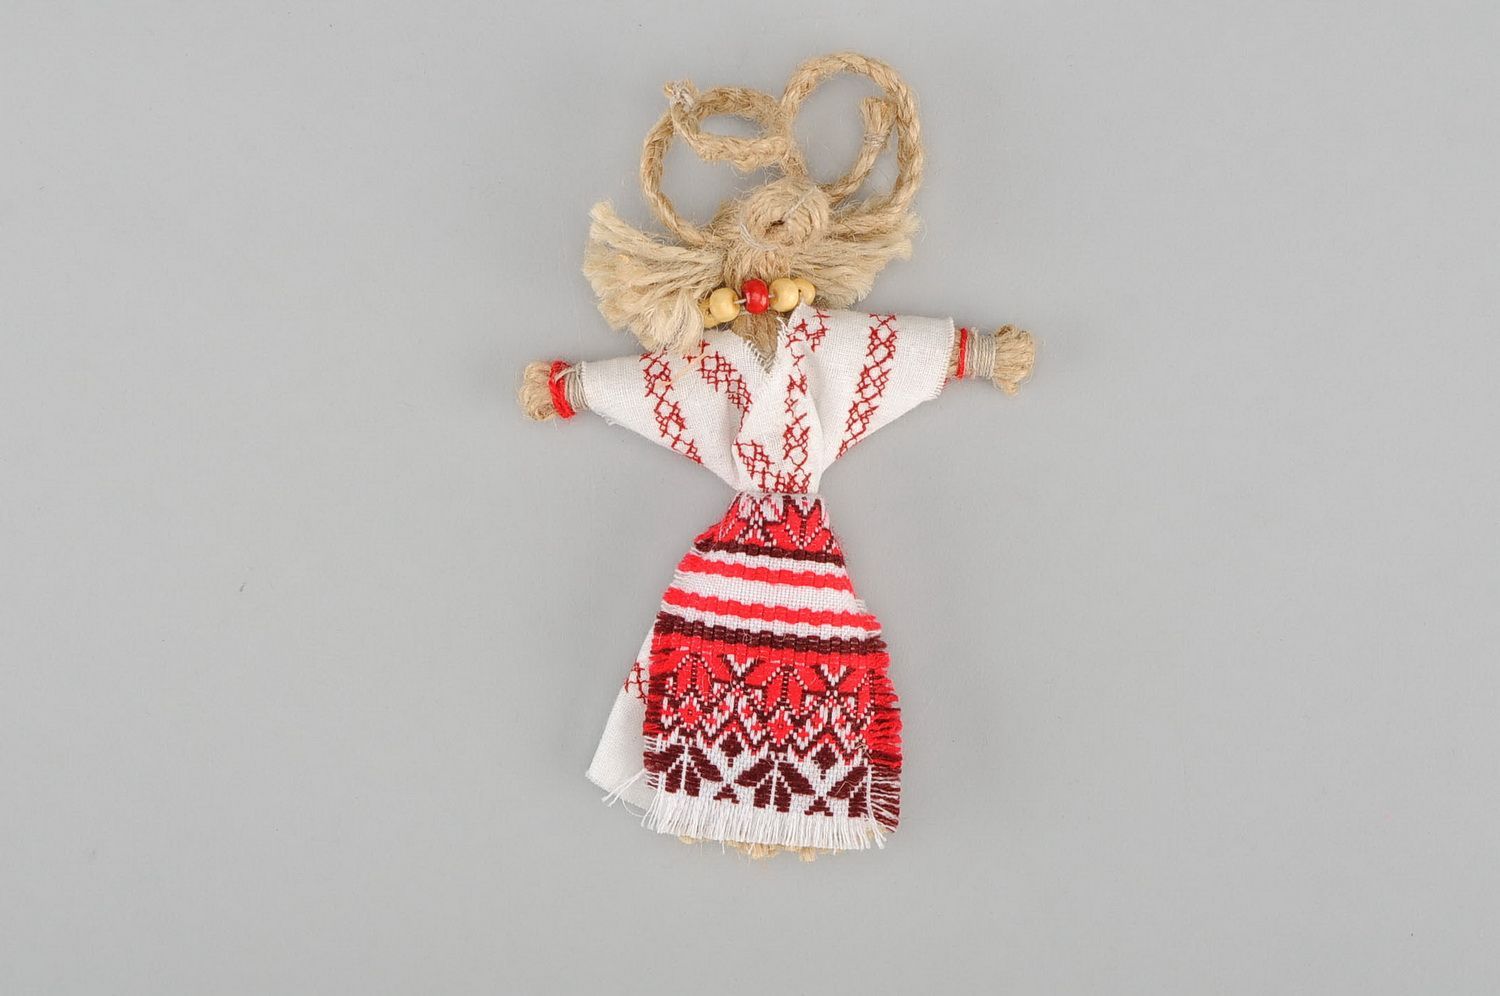 Bambola slava di stoffa fatta a mano amuleto talismano giocattolo etnico foto 3